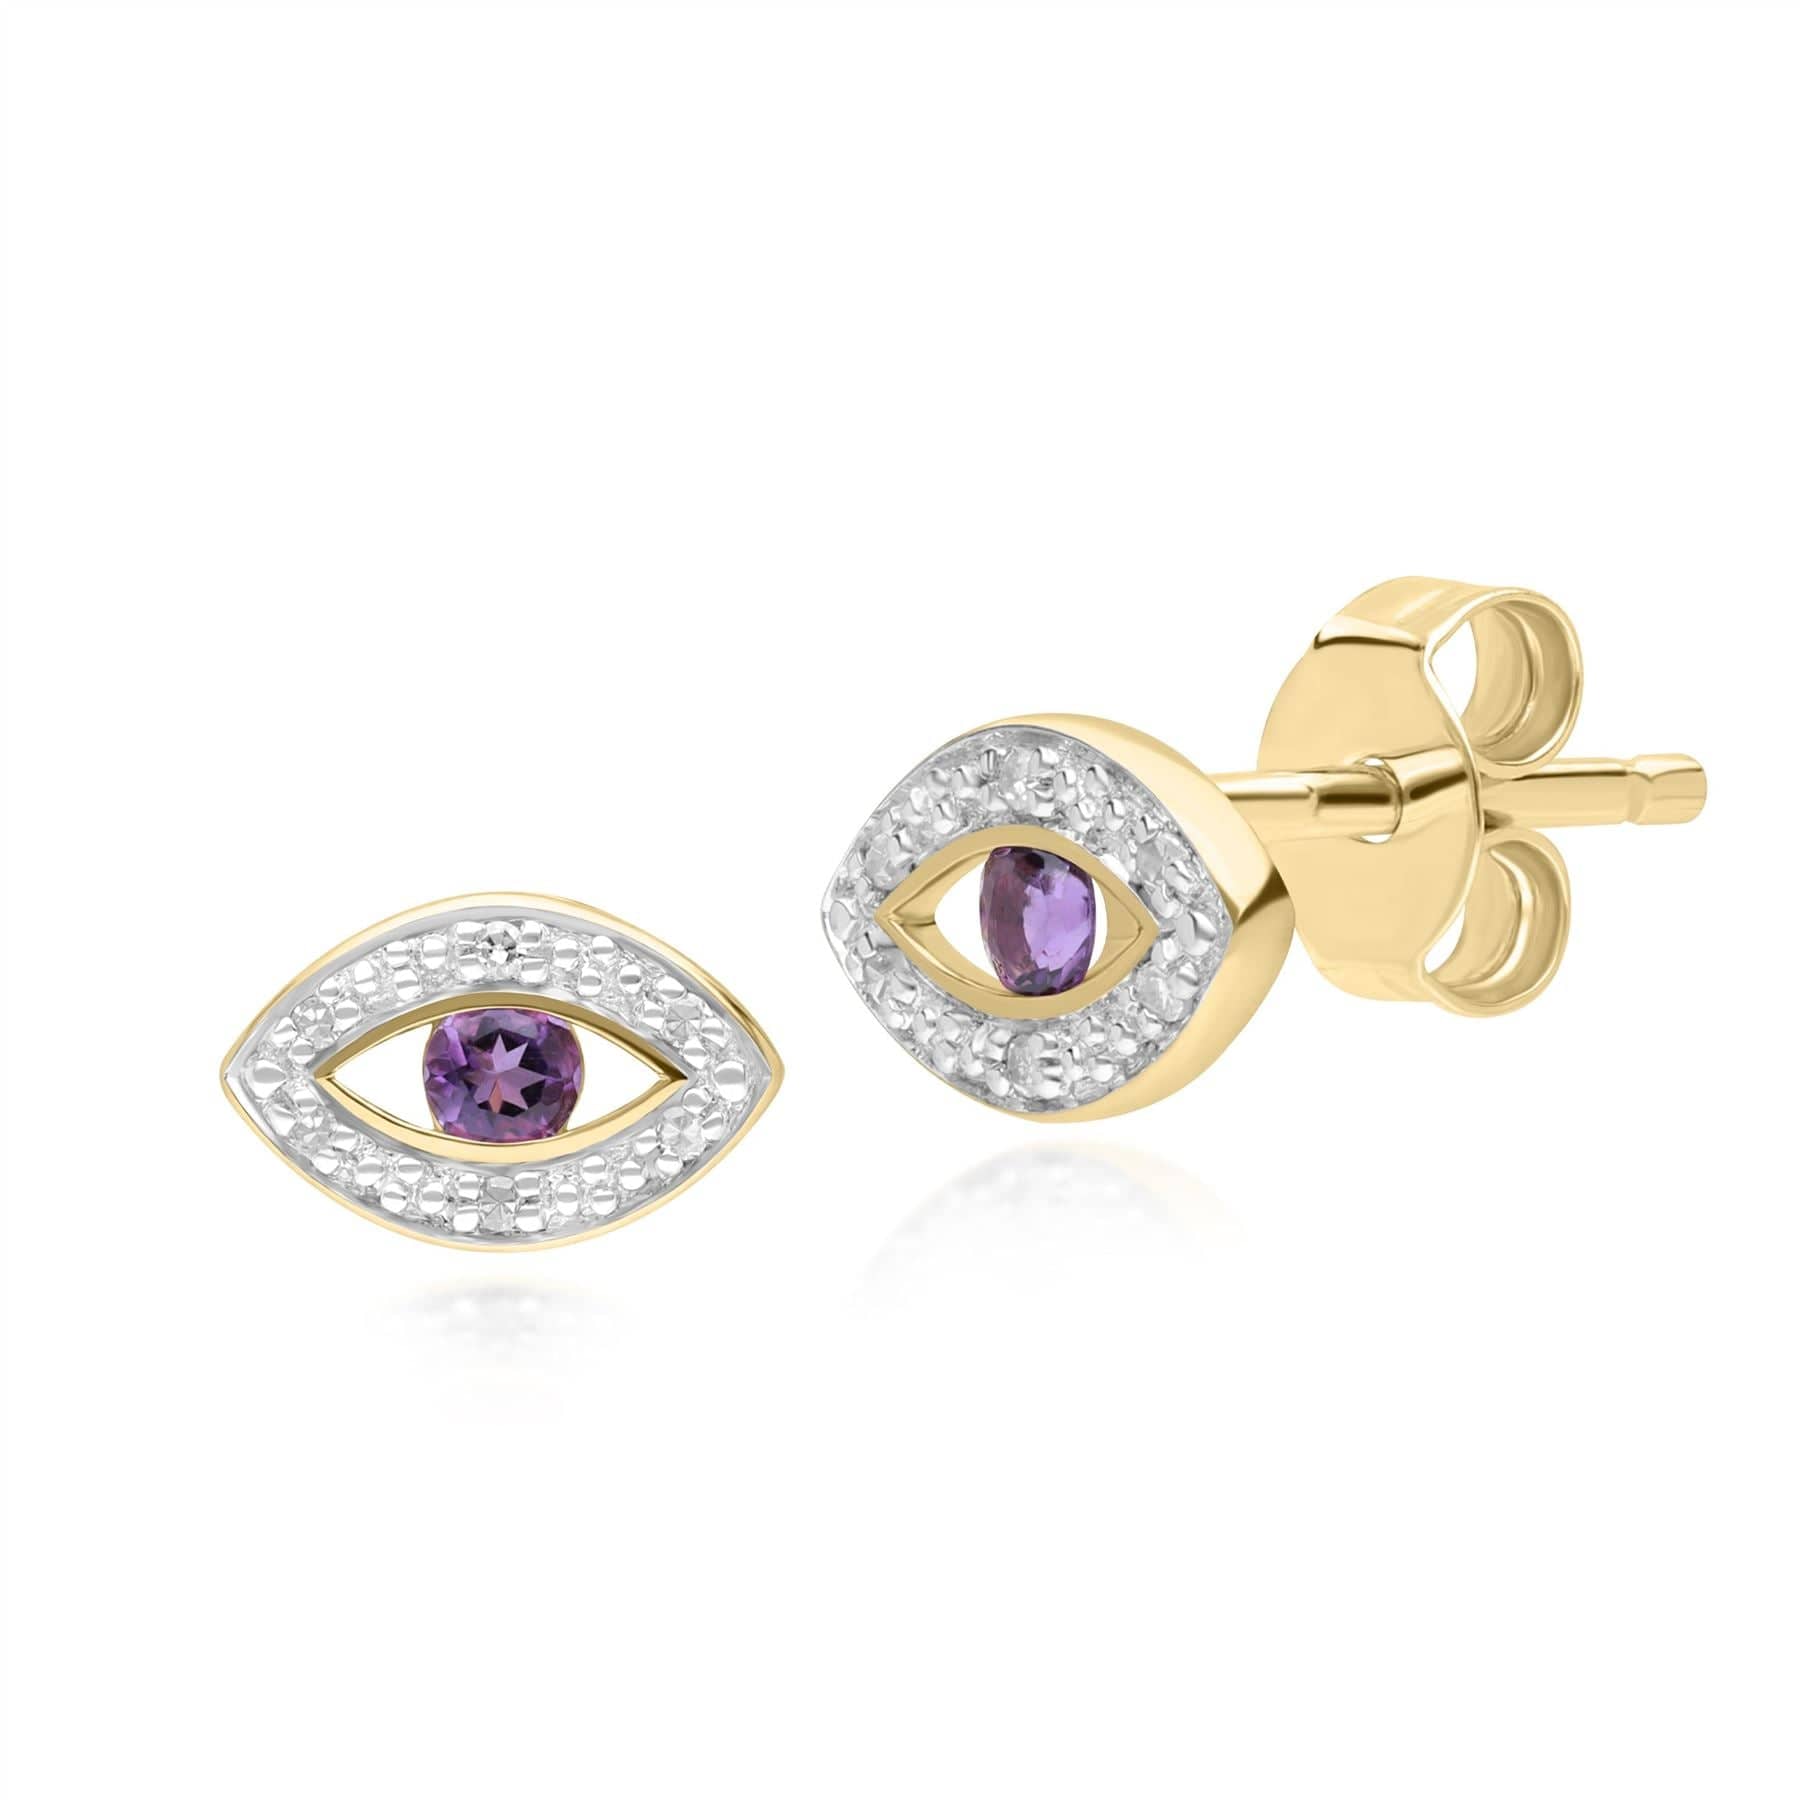 135E1824029 ECFEW™ Dainty Evil Eye Amethyst & Diamond Stud Earrings in 9ct Yellow Gold Front